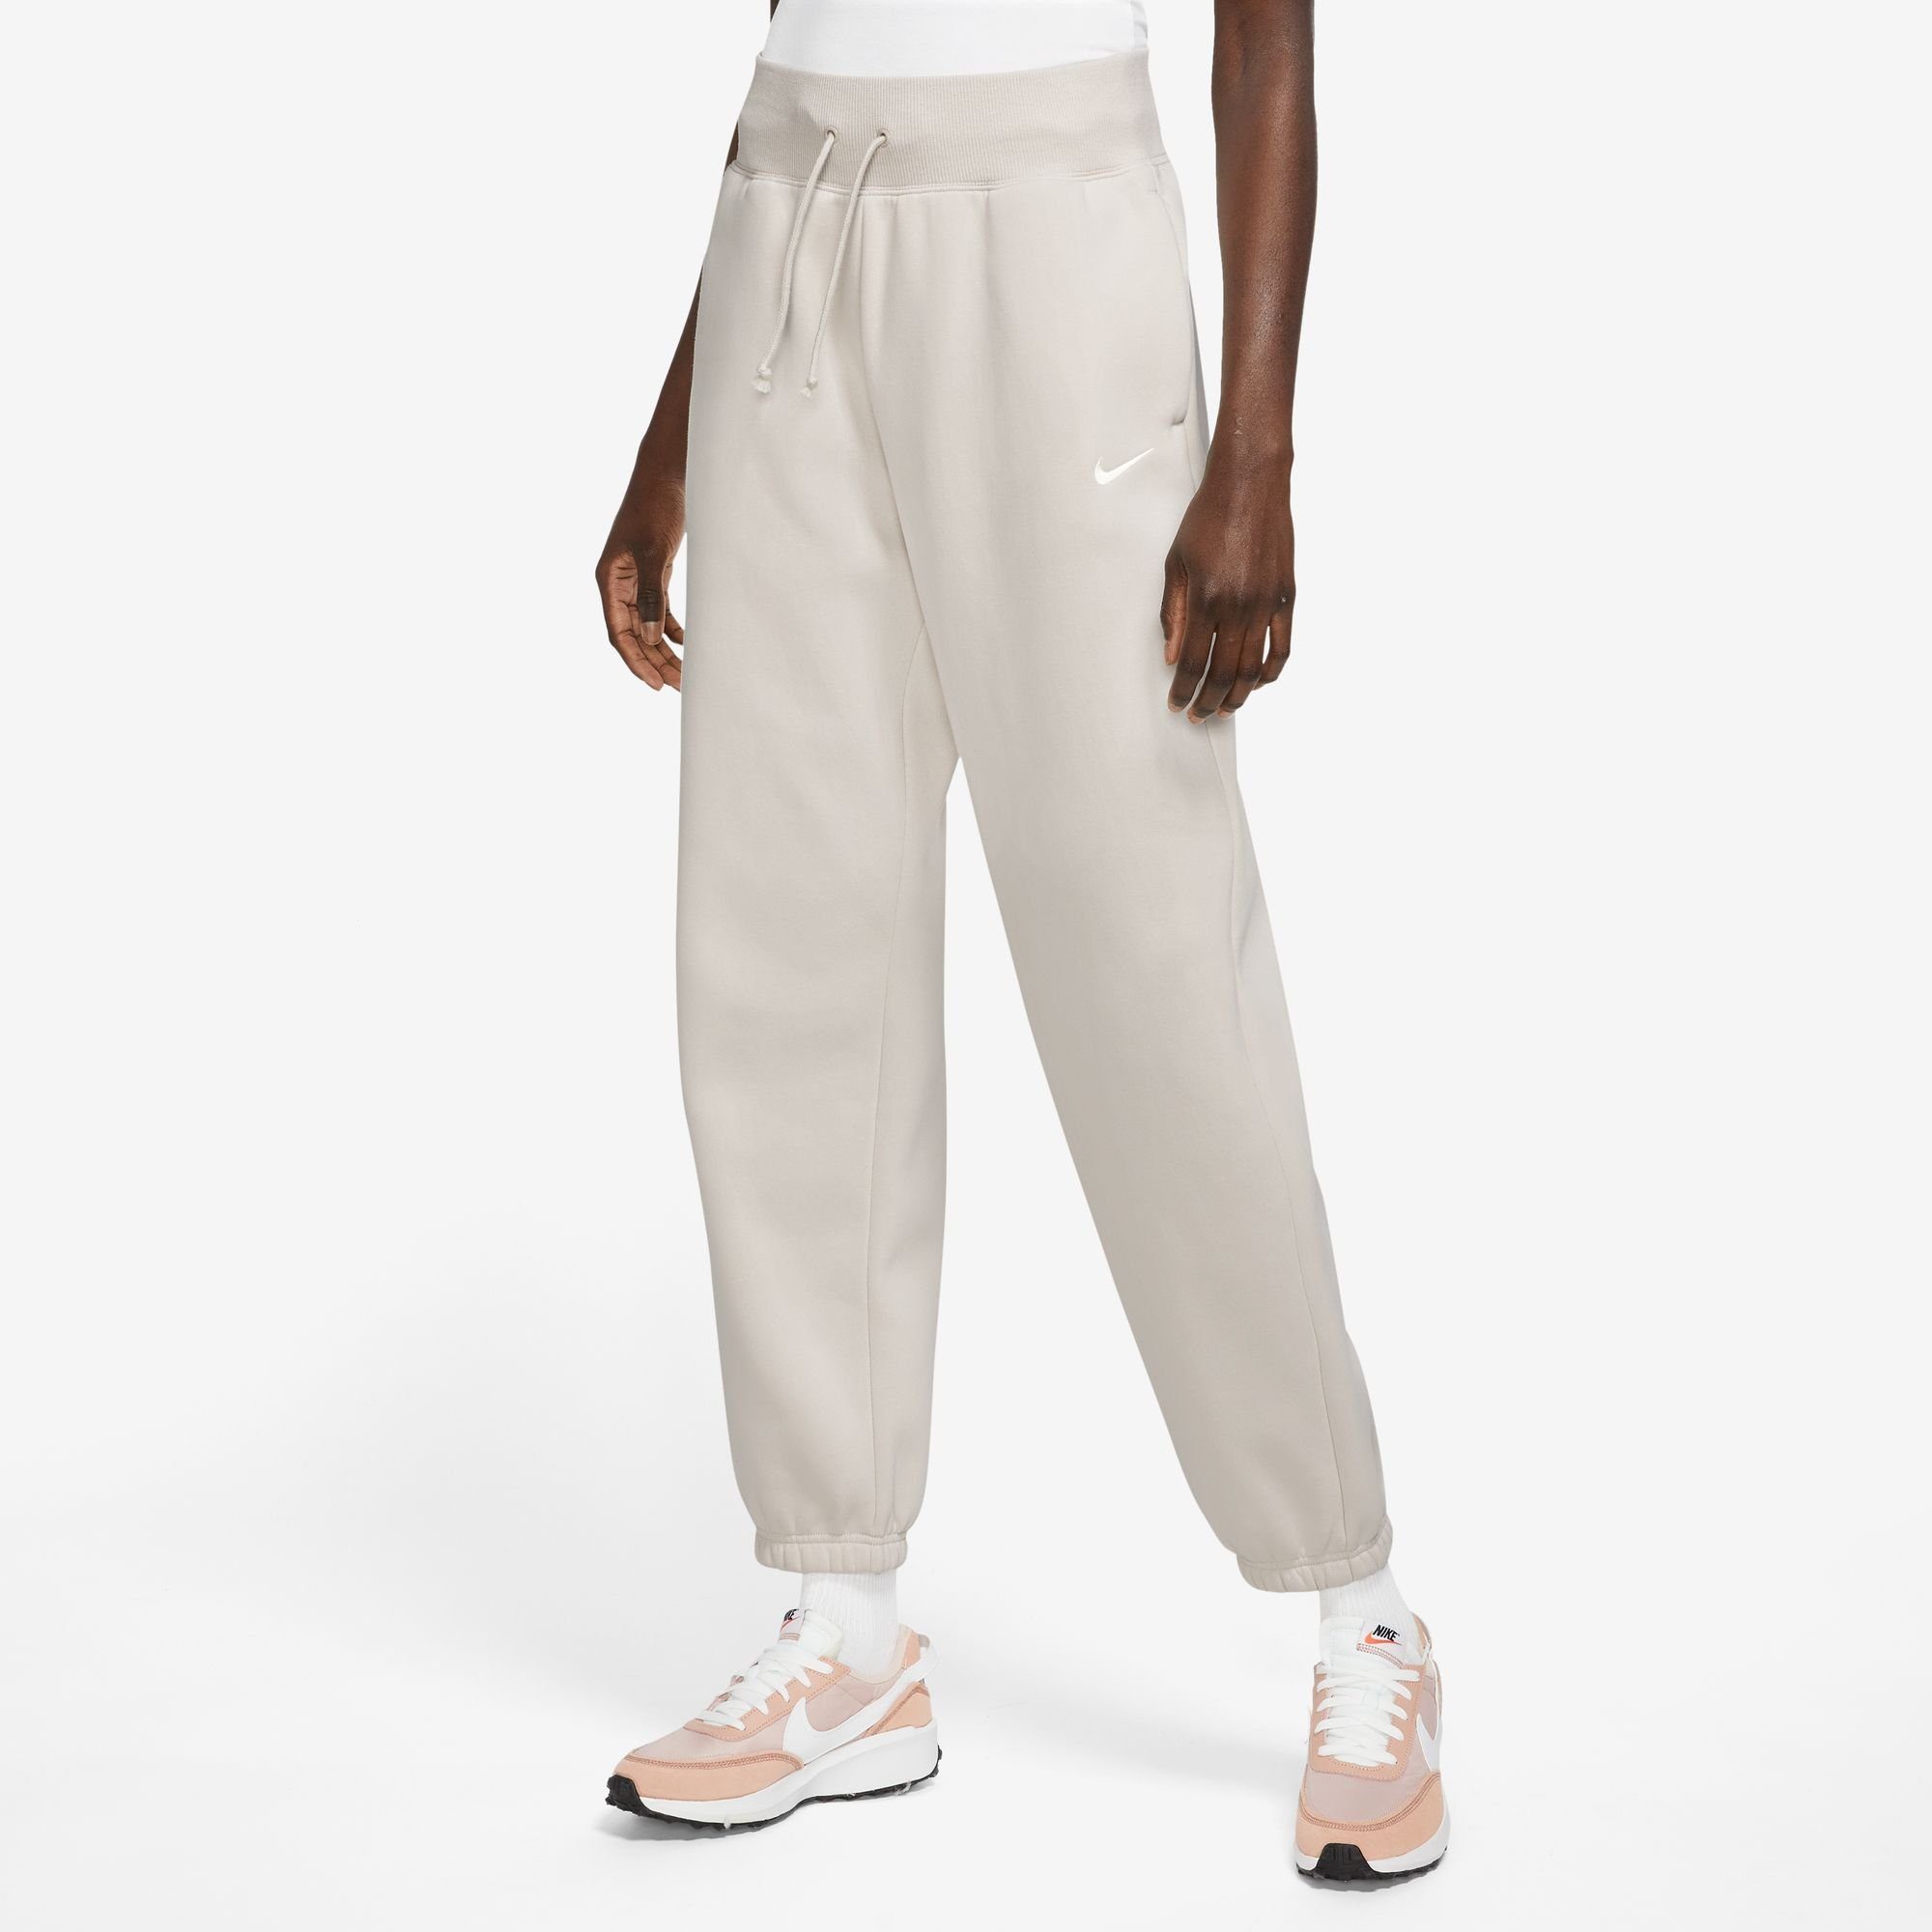 BRN/SAIL Jogginghose Sportswear HIGH-WAISTED WOMEN'S OVERSIZED Nike PHOENIX FLEECE SWEATPANTS LT OREWOOD